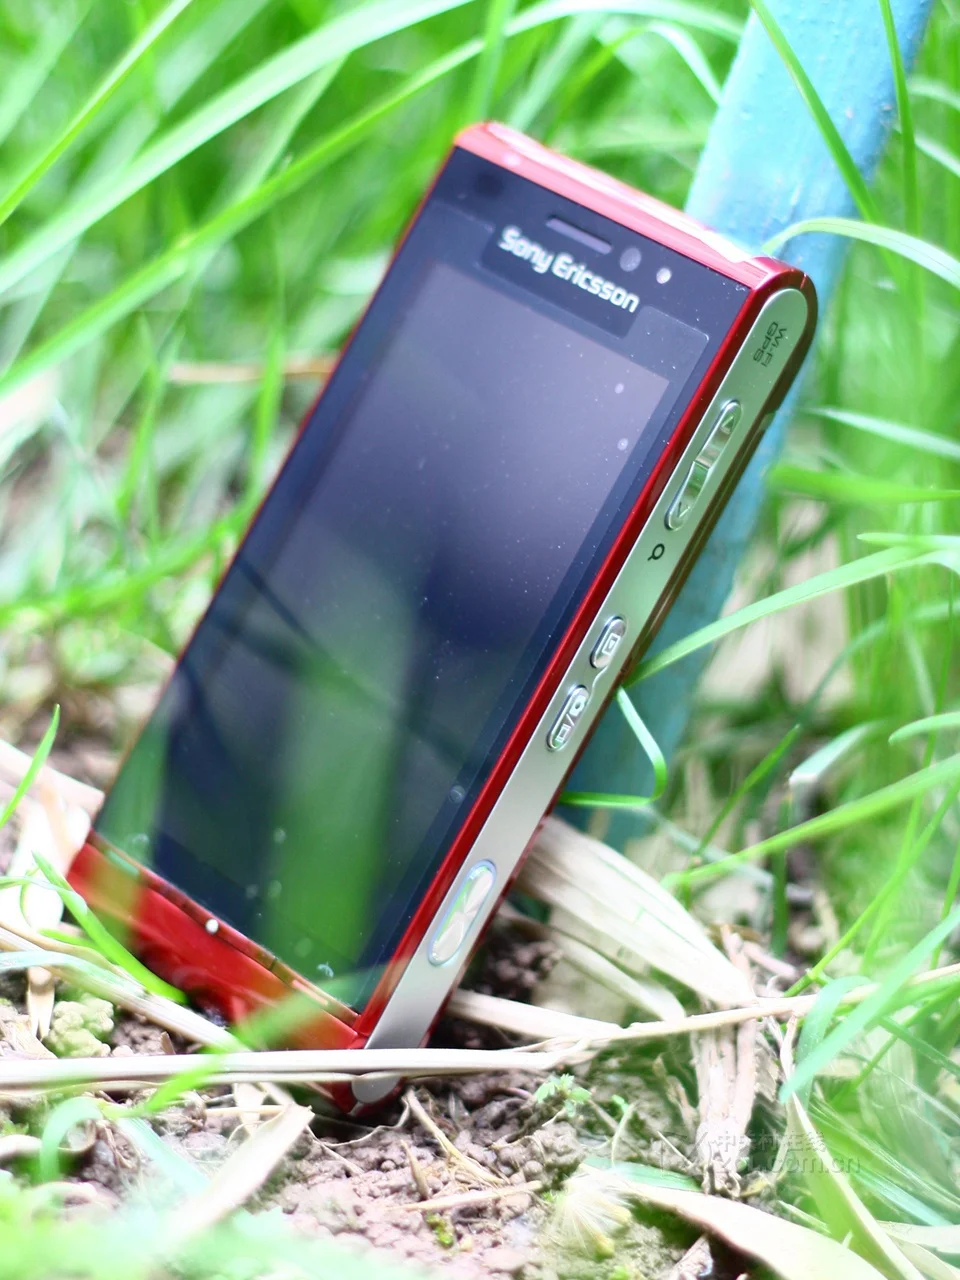 U1 мобильный телефон sony Ericsson U1i Satio разблокированный 3g 12MP Wifi gps сенсорный экран и гарантия 0ne год